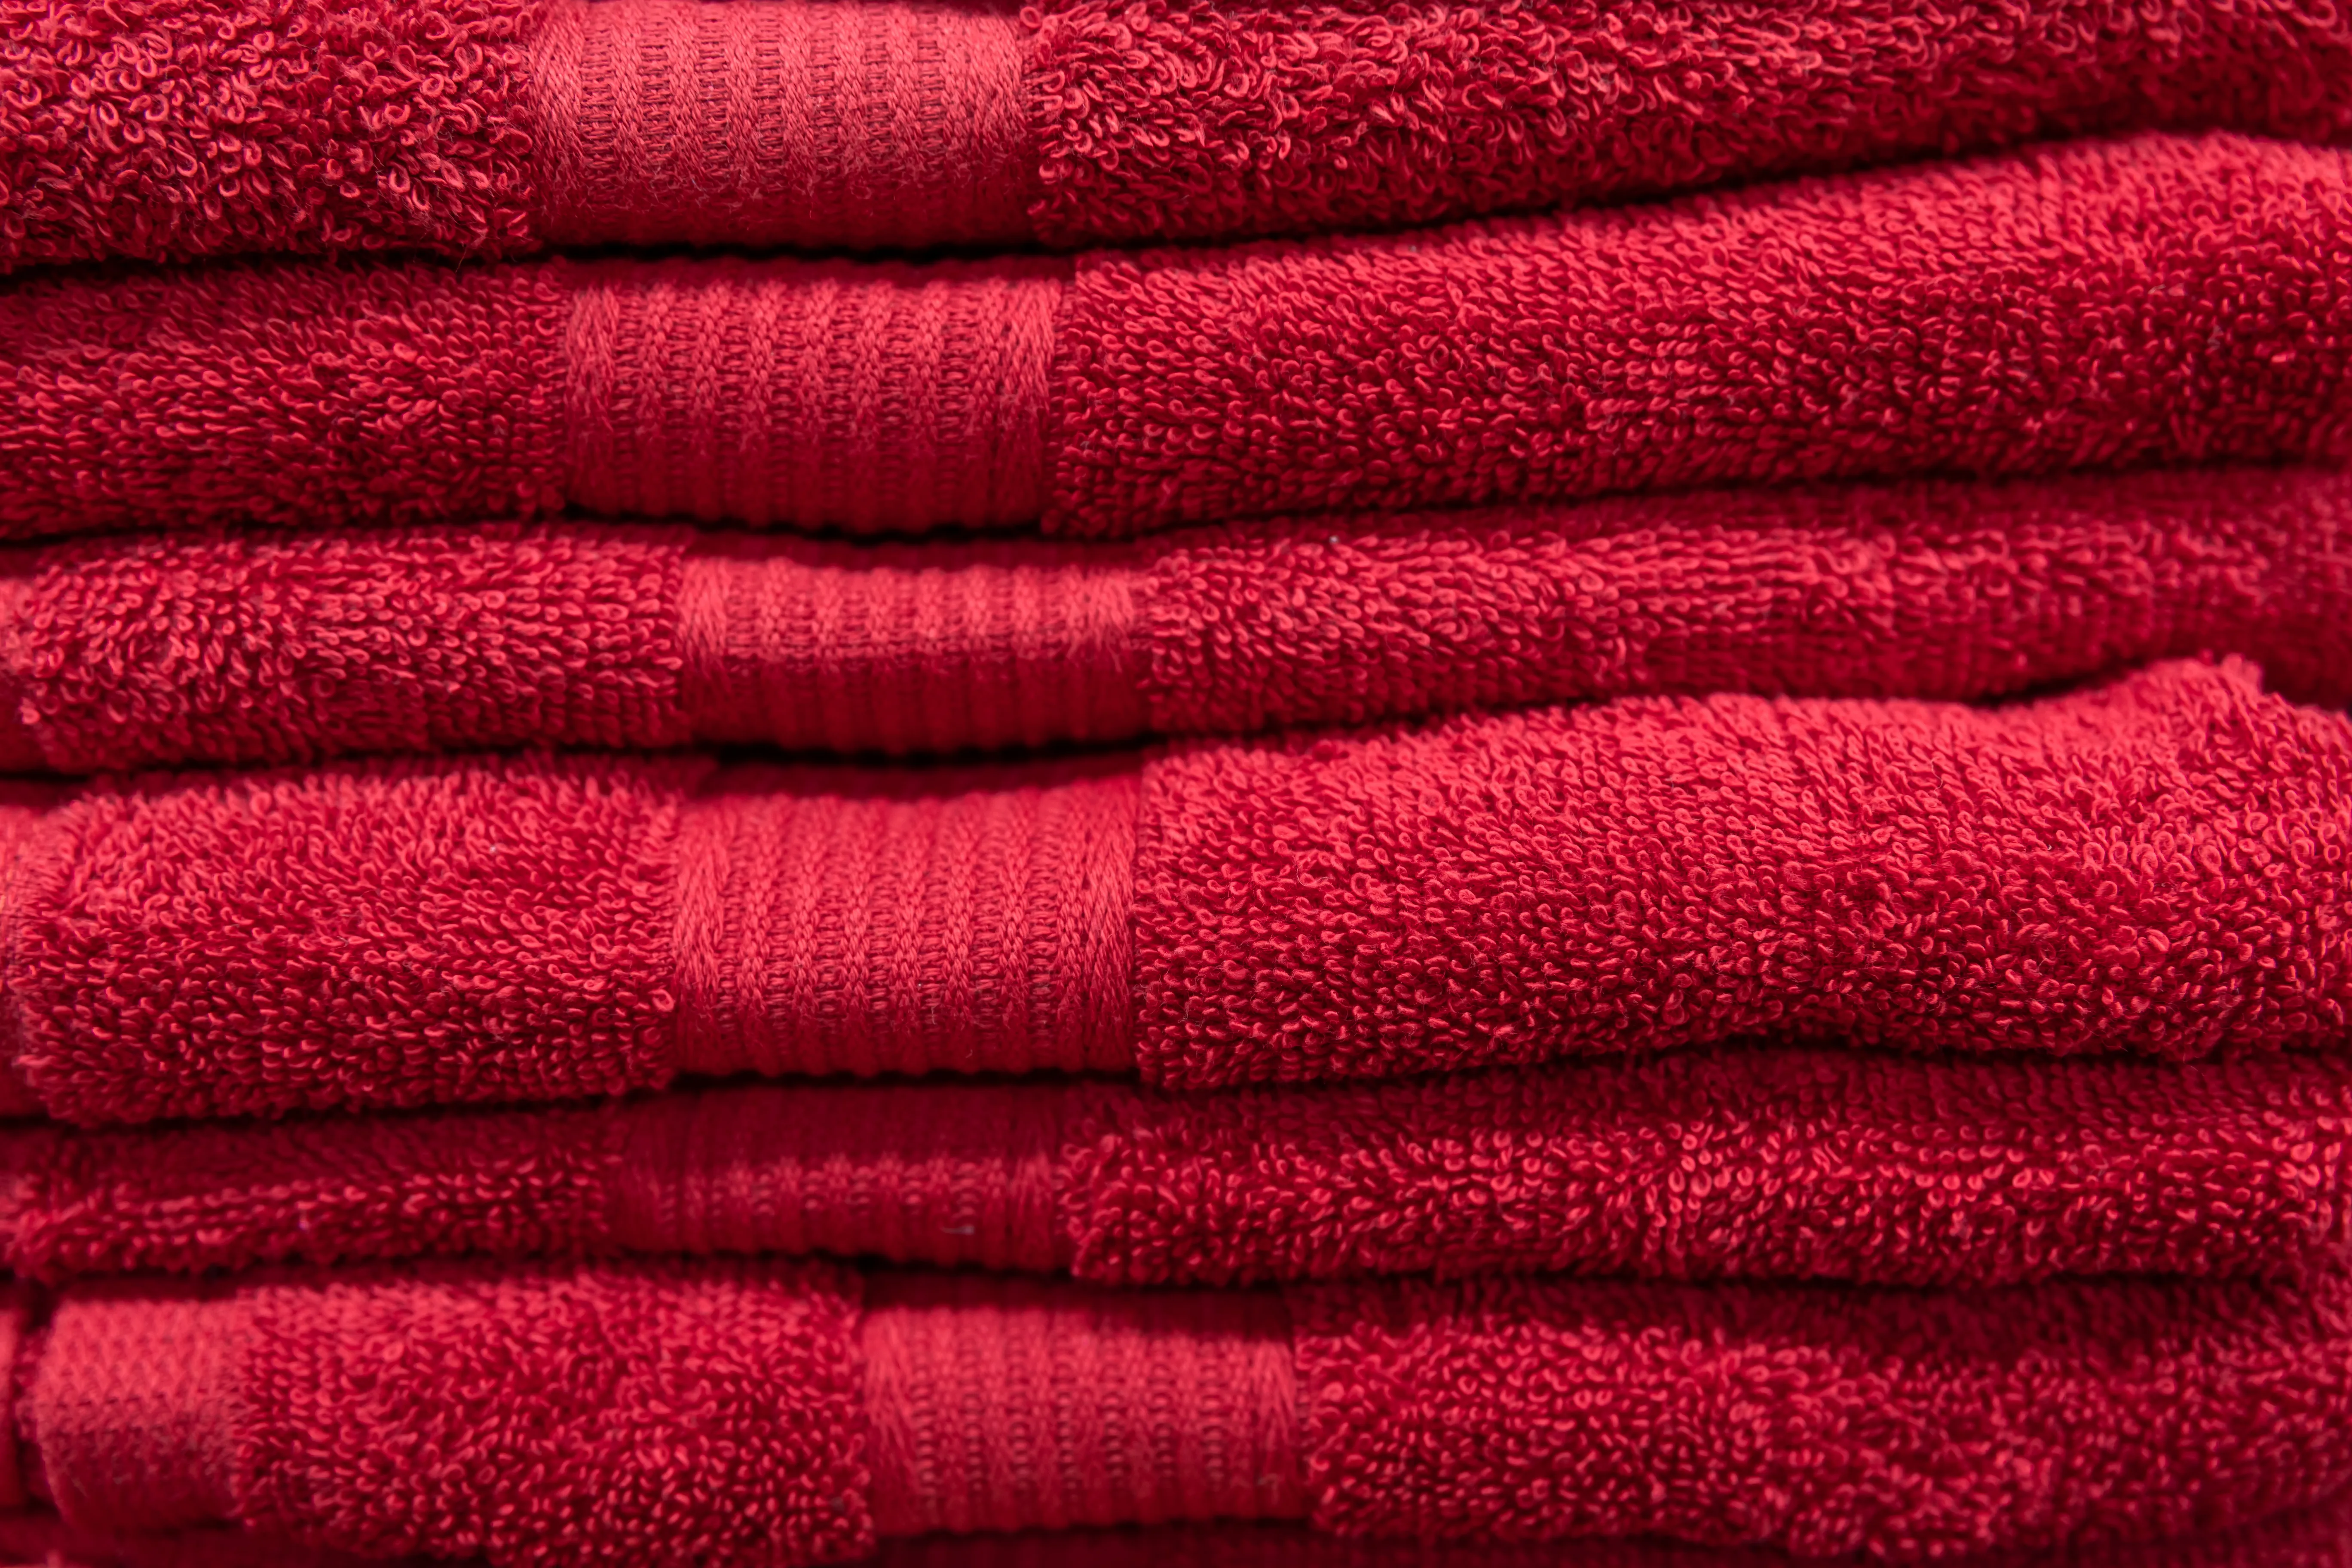 Червоних рушників краще уникати у ванній кімнаті